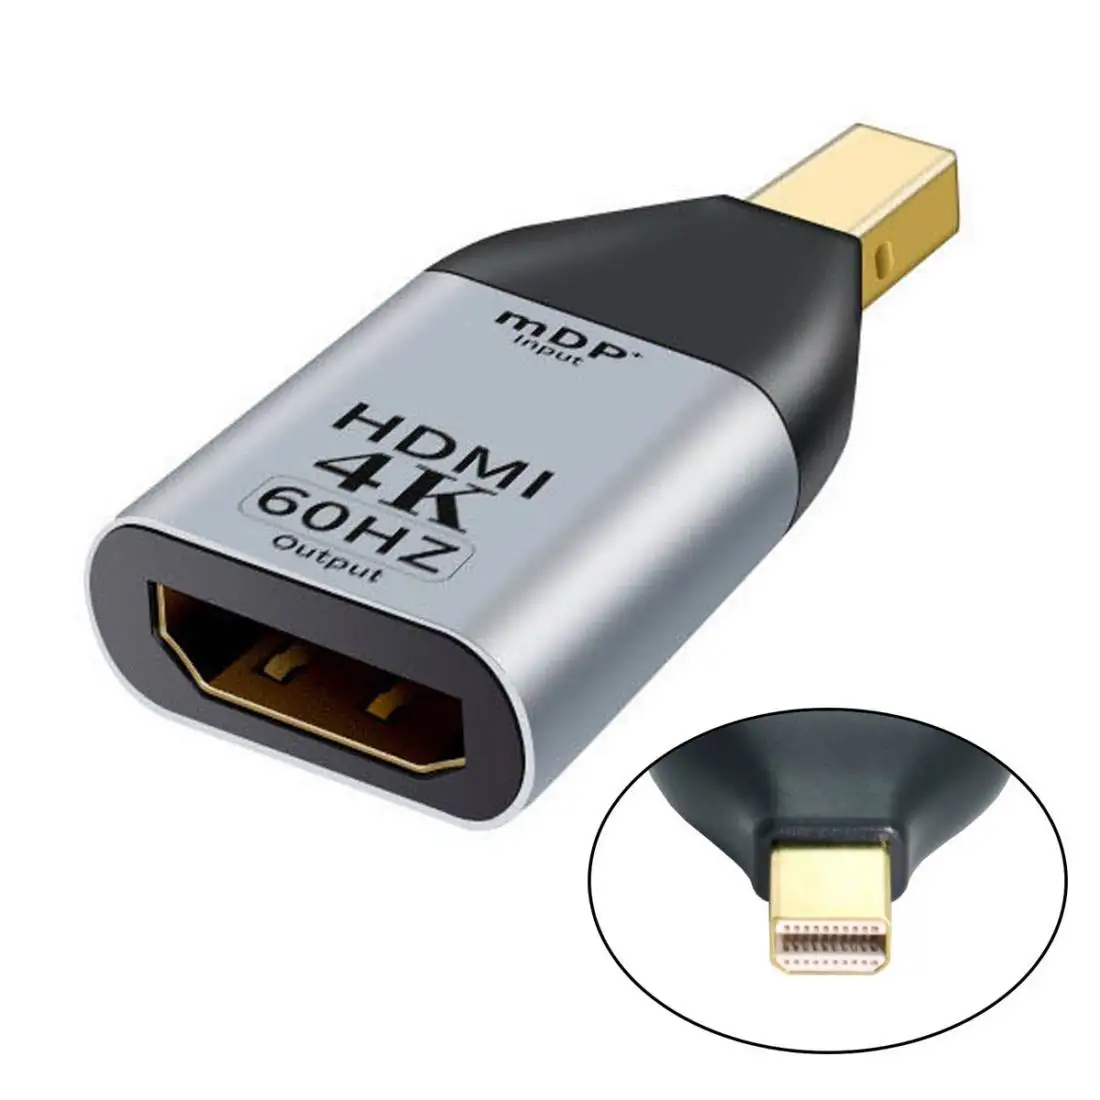 

ChenYang DP DisplayPort источник входа штекер в HDTV раковину выход гнездо отображает 4K @ 60 Гц Ultra HD конвертер адаптер